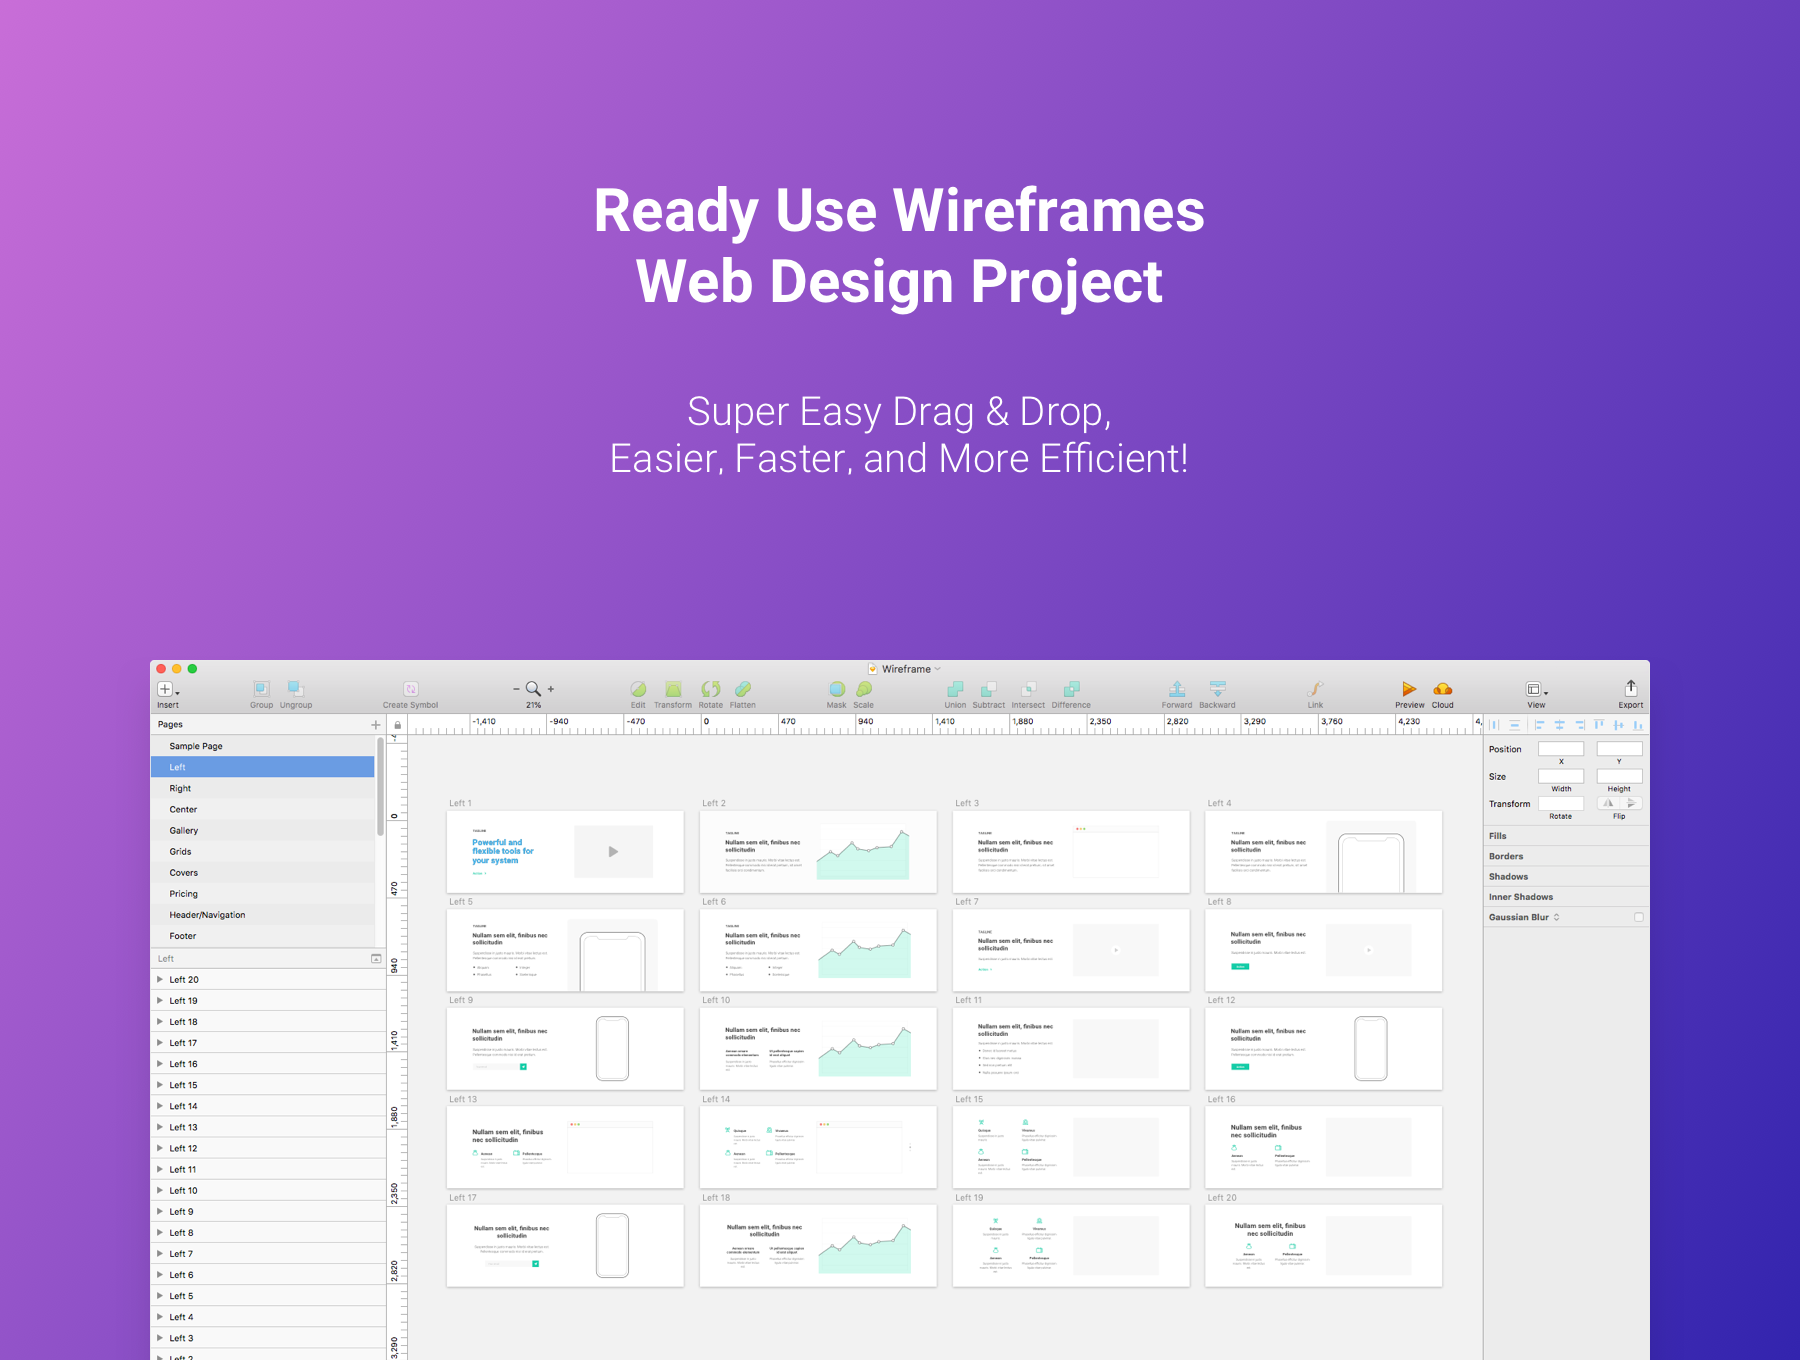 整套Web网页线框原型设计UI工具包 Wirefire -